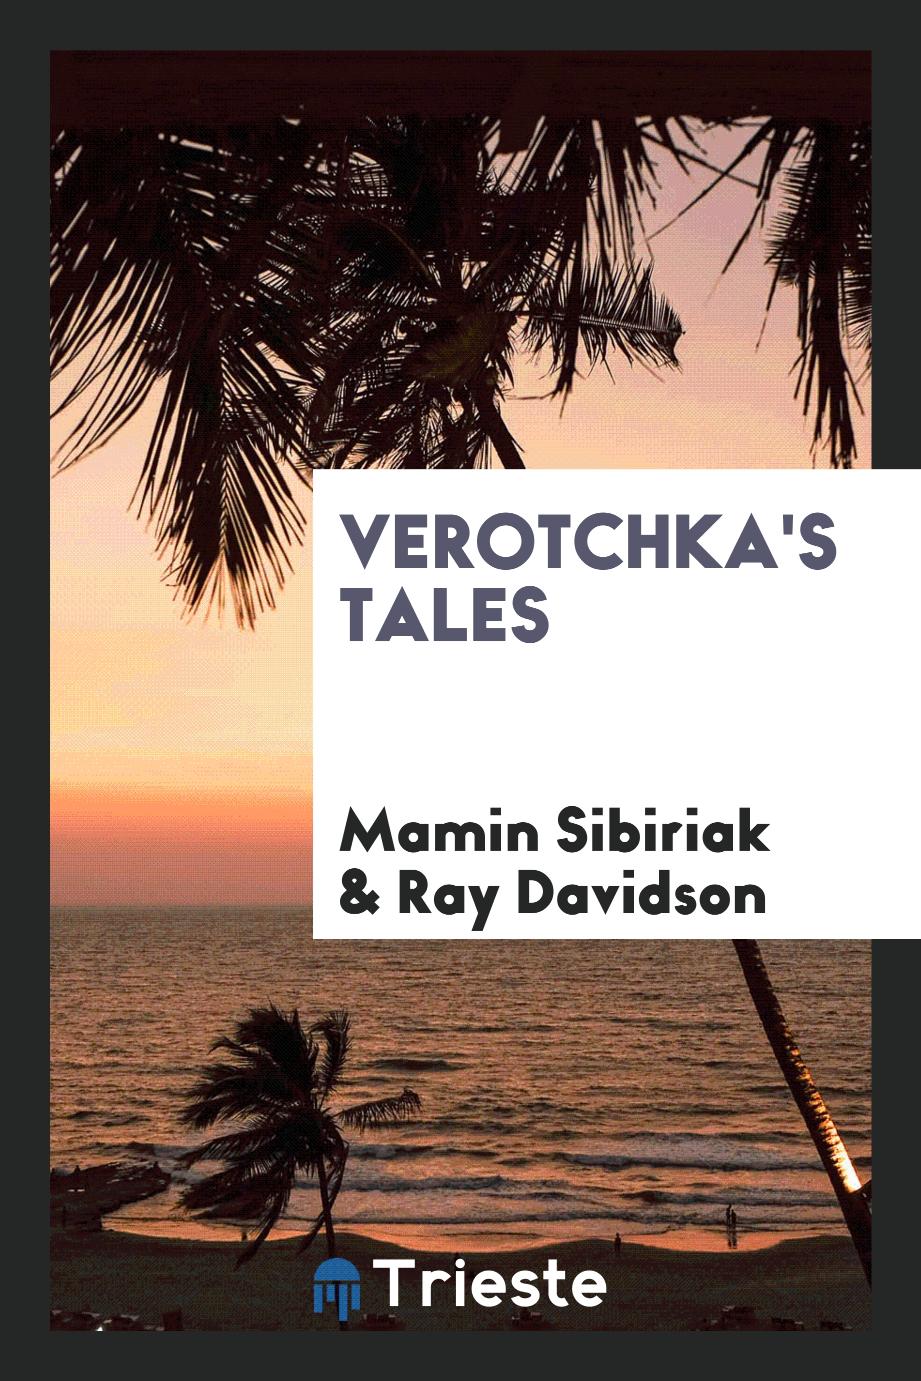 Verotchka's tales